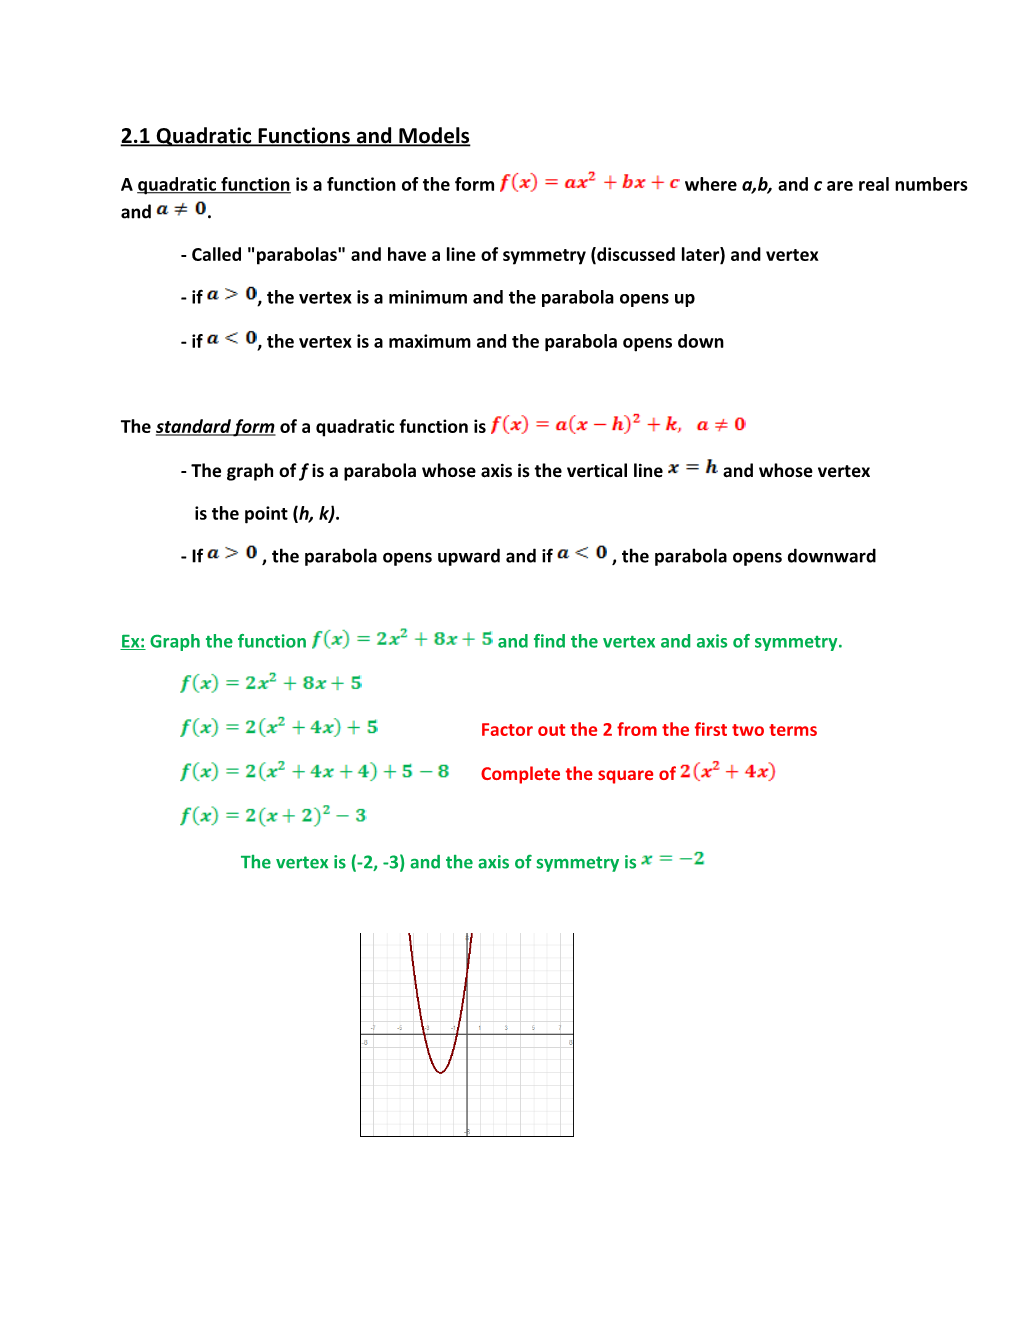 2.1 Quadratic Functions and Models